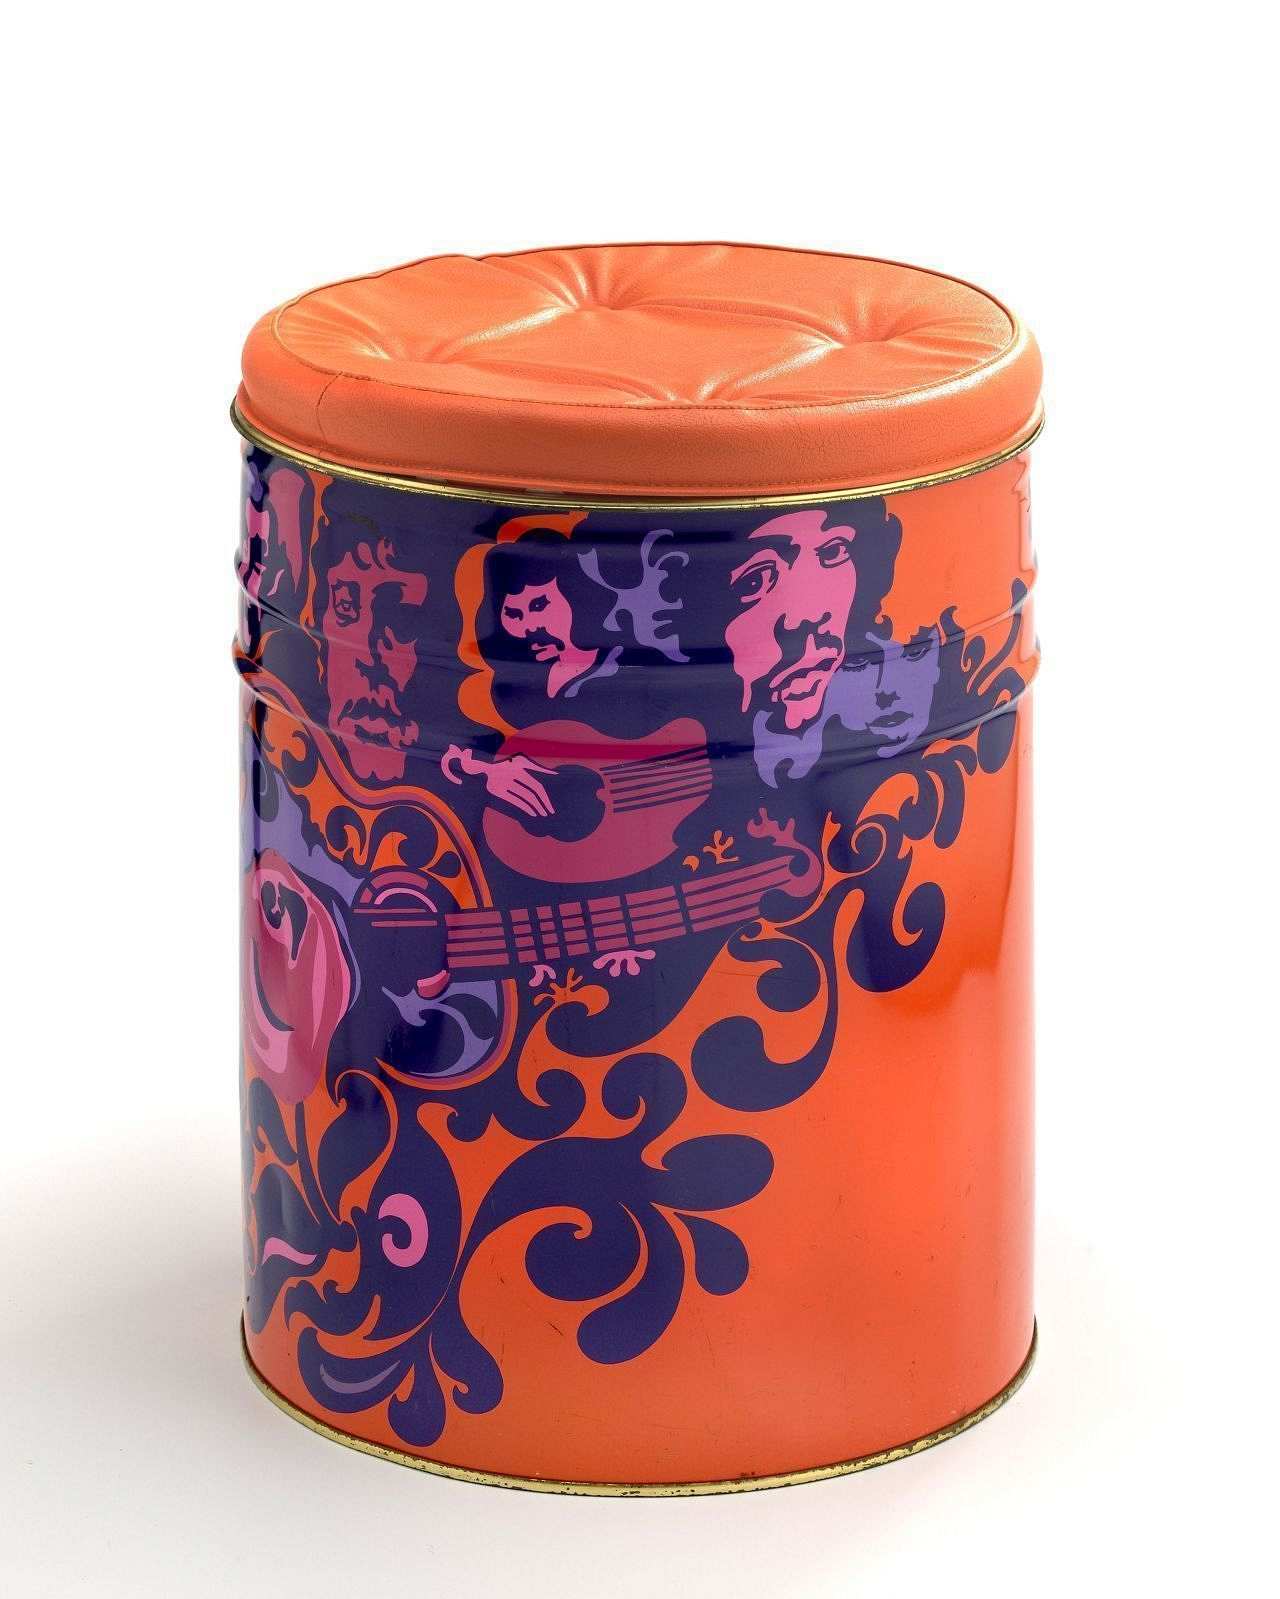 Orangefarbene zylindrische Tonne, rundum mit Blumen, Ornamenten, Gitarren und Köpfen bemalt (dunkelblau, rosafarben, violett), darunter Jimi Hendrix; Deckel abnehmbar, gepolstert, mit orangefarbenem Kunstleder bezogen.